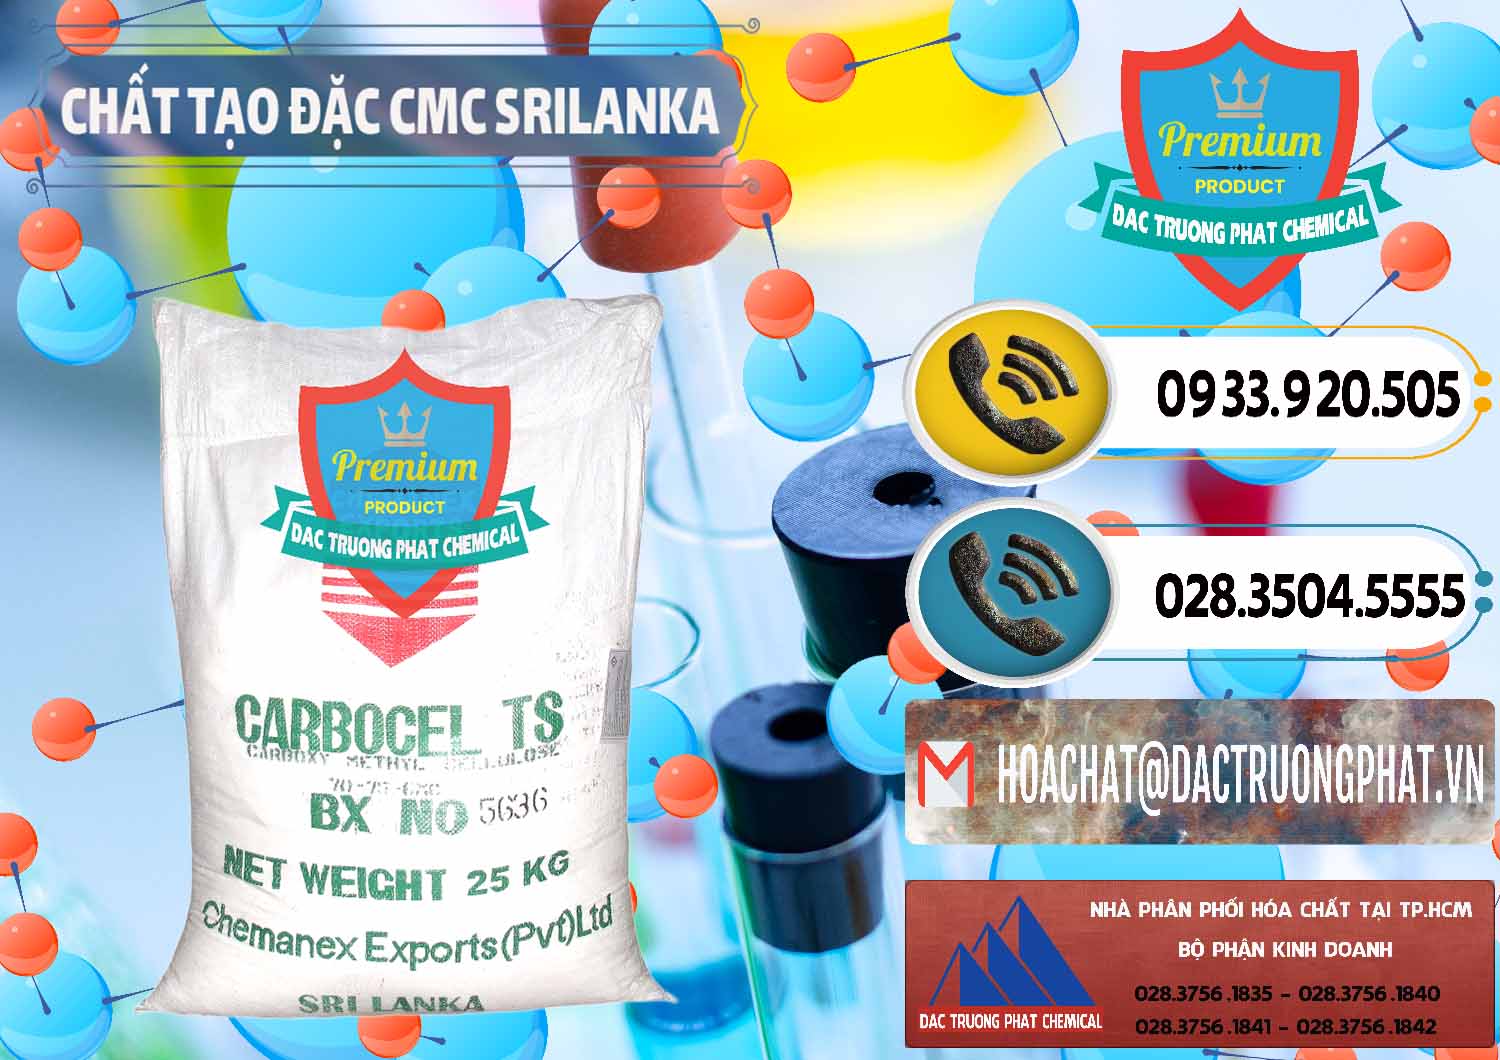 Cty kinh doanh & bán Chất Tạo Đặc CMC - Carboxyl Methyl Cellulose Srilanka - 0045 - Đơn vị nhập khẩu & phân phối hóa chất tại TP.HCM - hoachatdetnhuom.vn